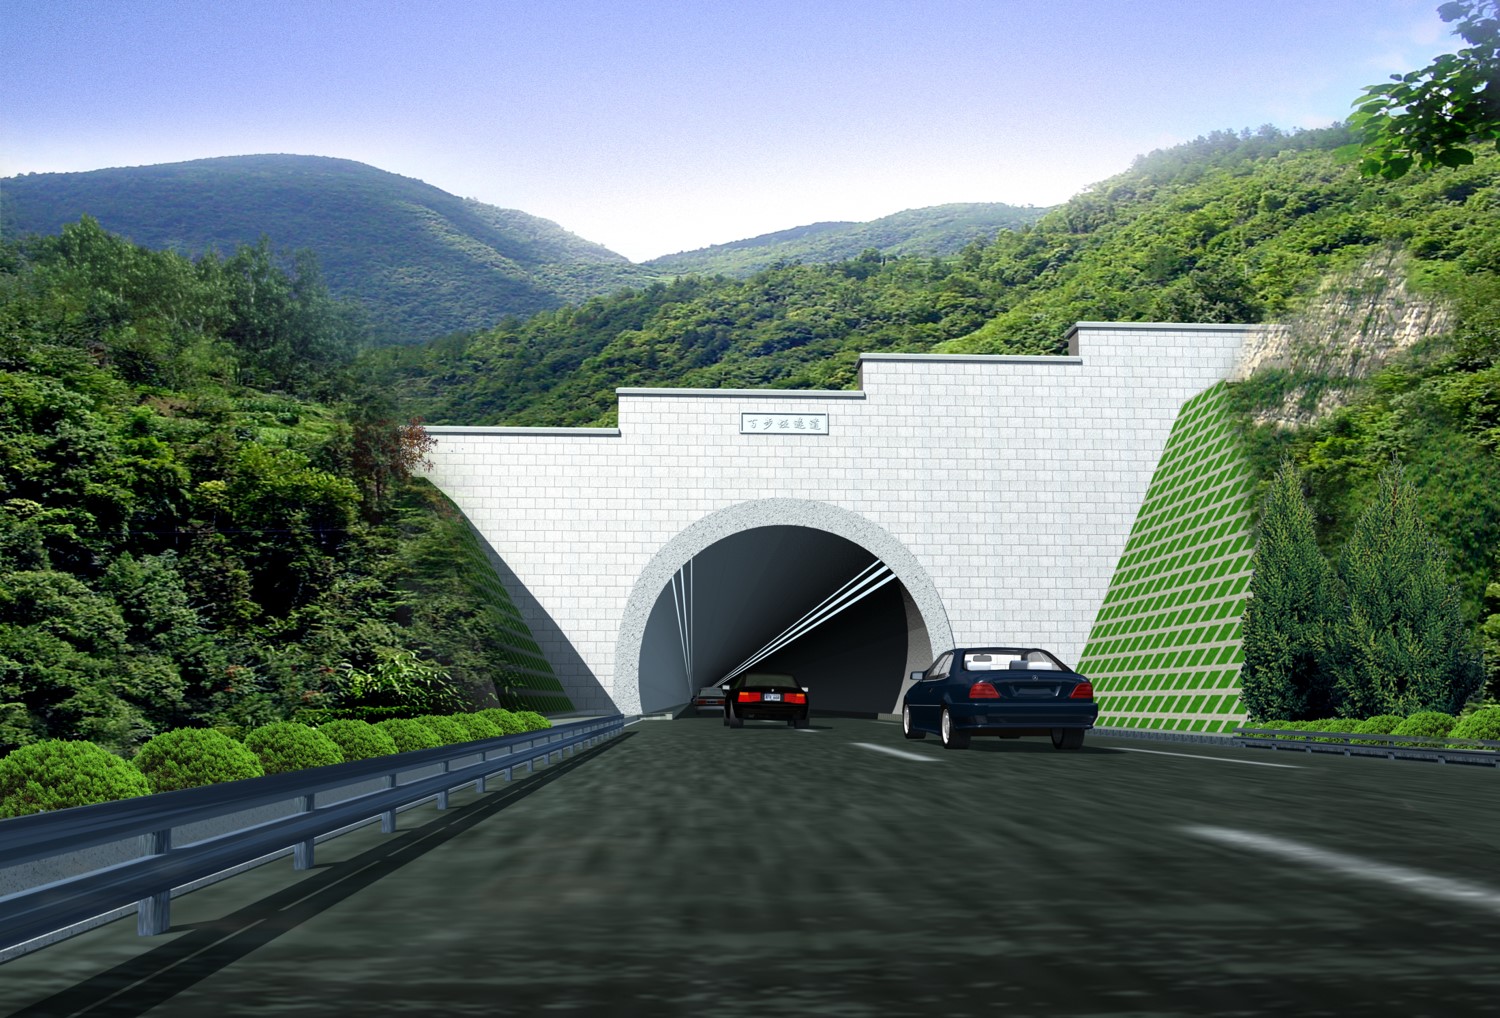 公路与铁路隧道洞门与洞门结构构造